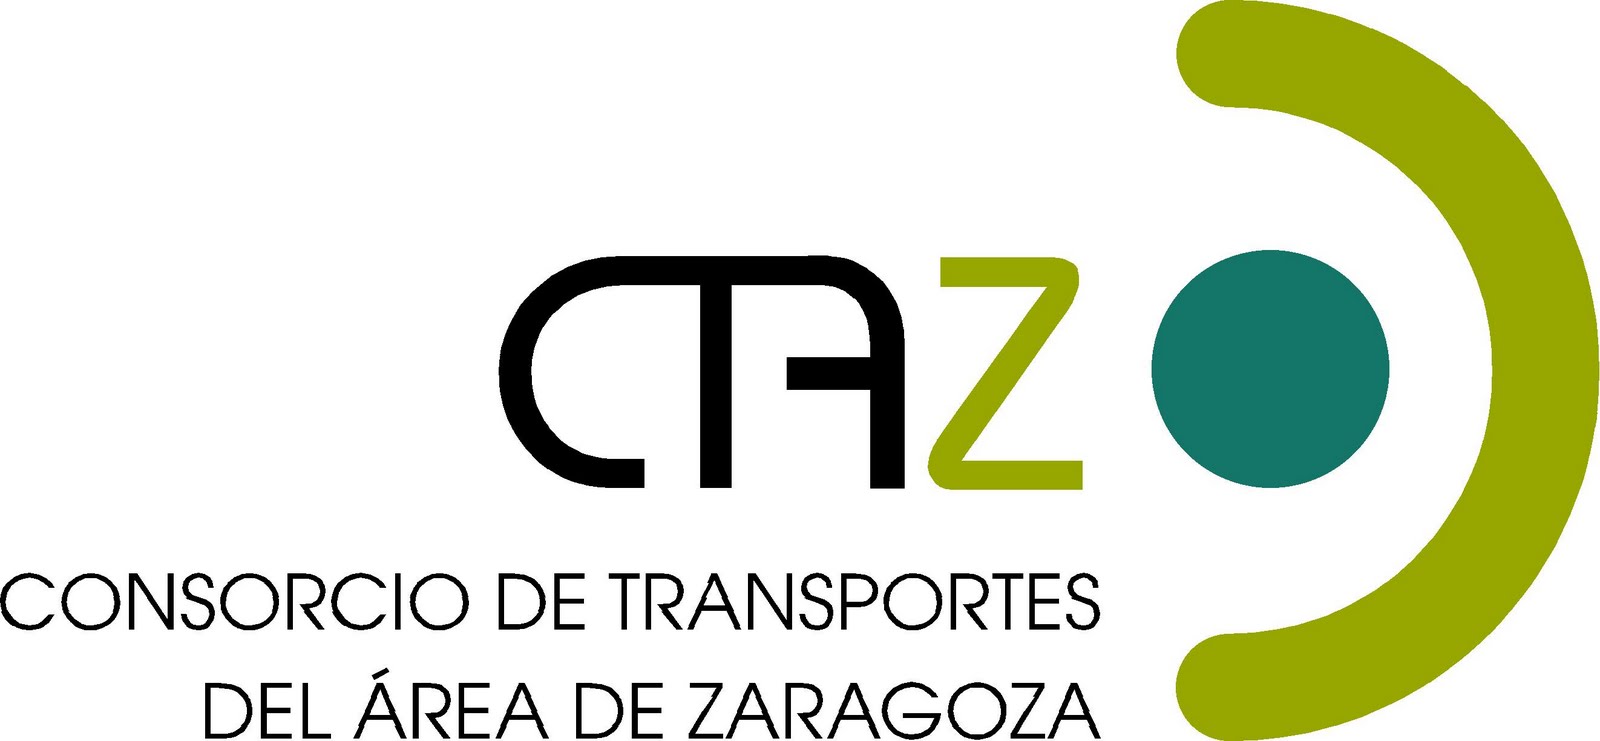 Consorcio de Transportes del Área de Zaragoza